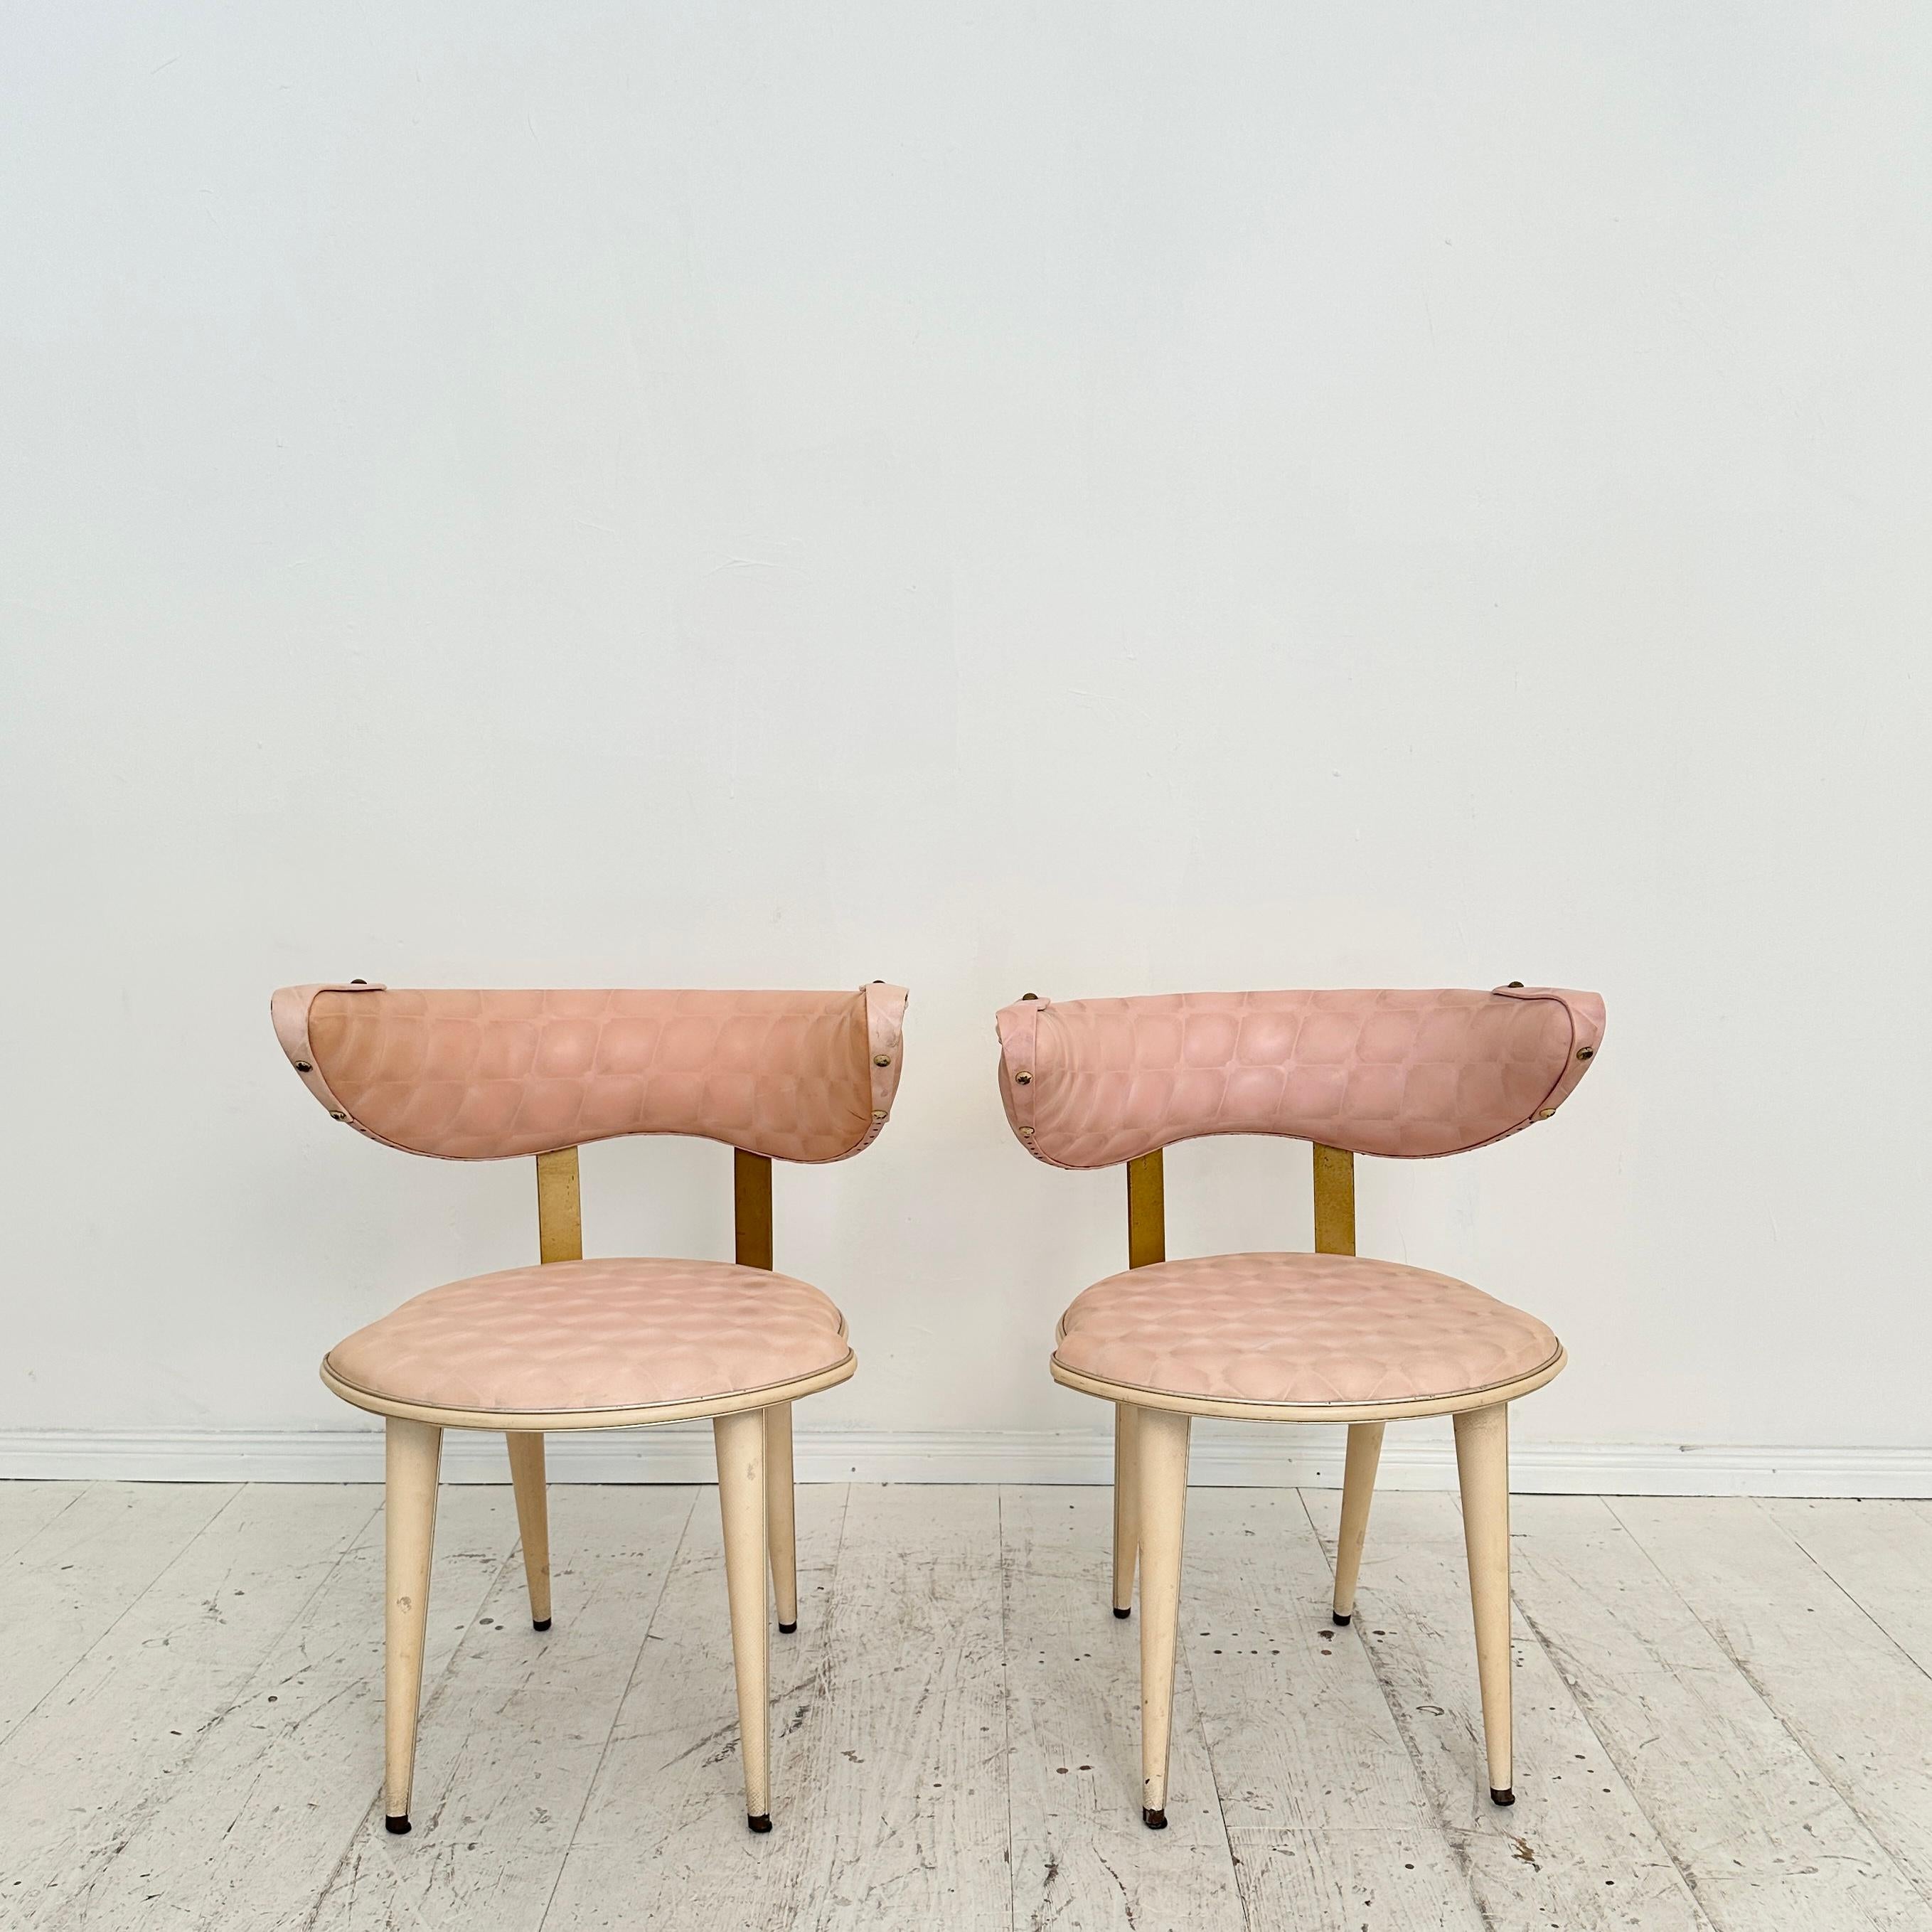 Sehr seltenes Paar Sessel von Umberto Mascagni aus den 1950er Jahren. Die Stühle sind aus Holz und Metall gefertigt und mit einem Vinylbezug versehen.
Sie sind in hervorragendem Originalzustand.
Ein einzigartiges Stück, das ein toller Blickfang für